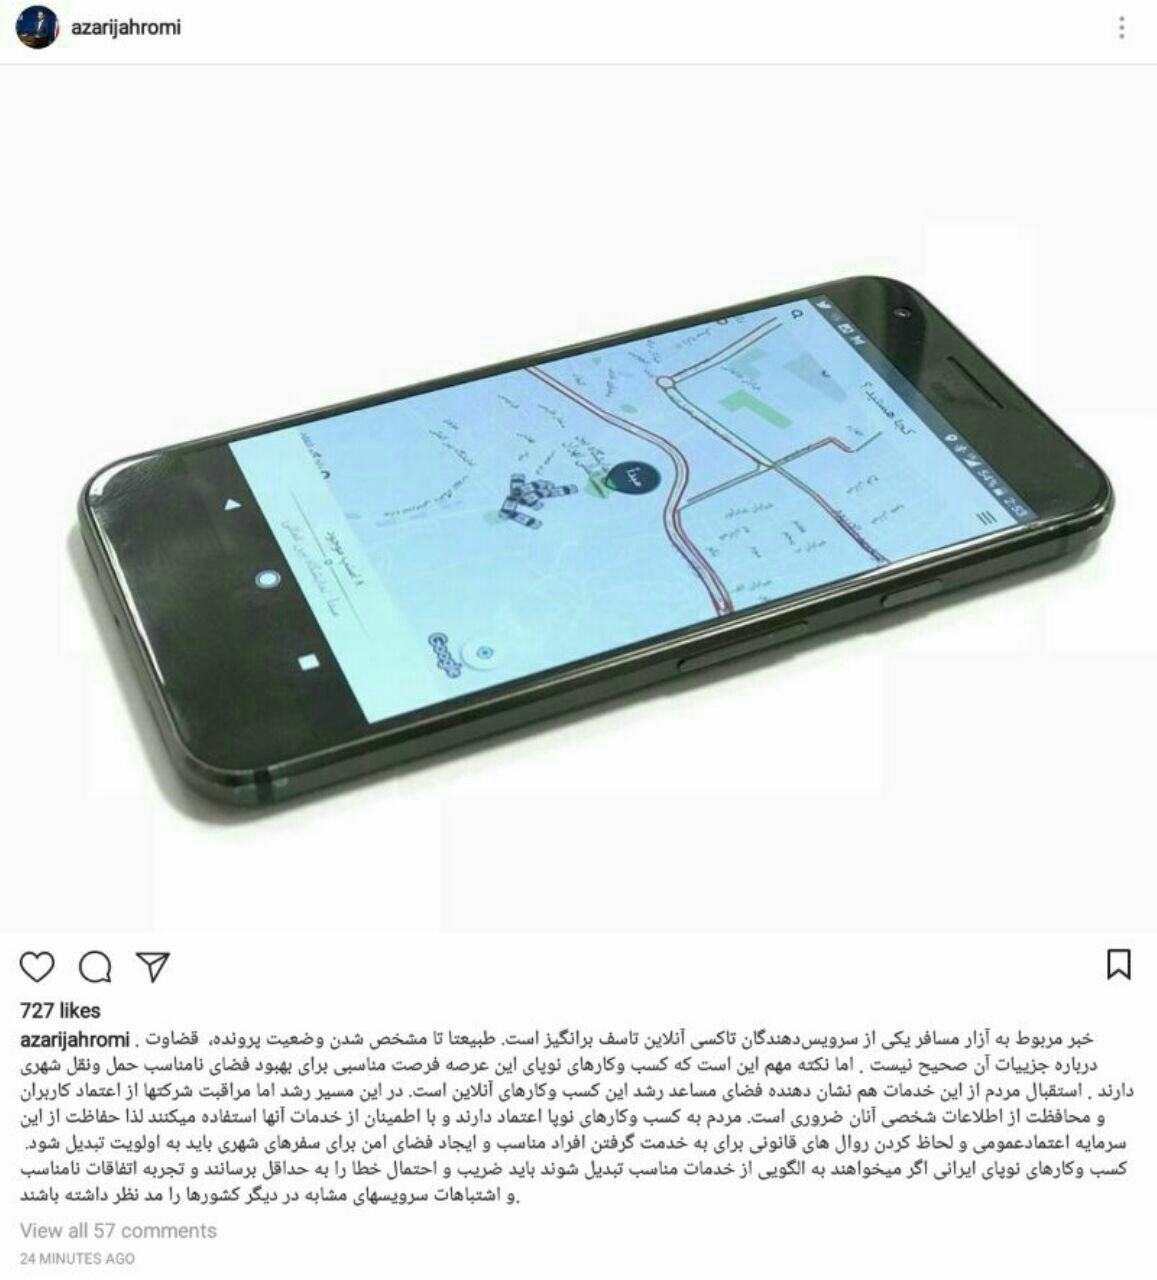 واکنش اینستاگرامی وزیر ارتباطات درباره آزار مسافر توسط اسنپ